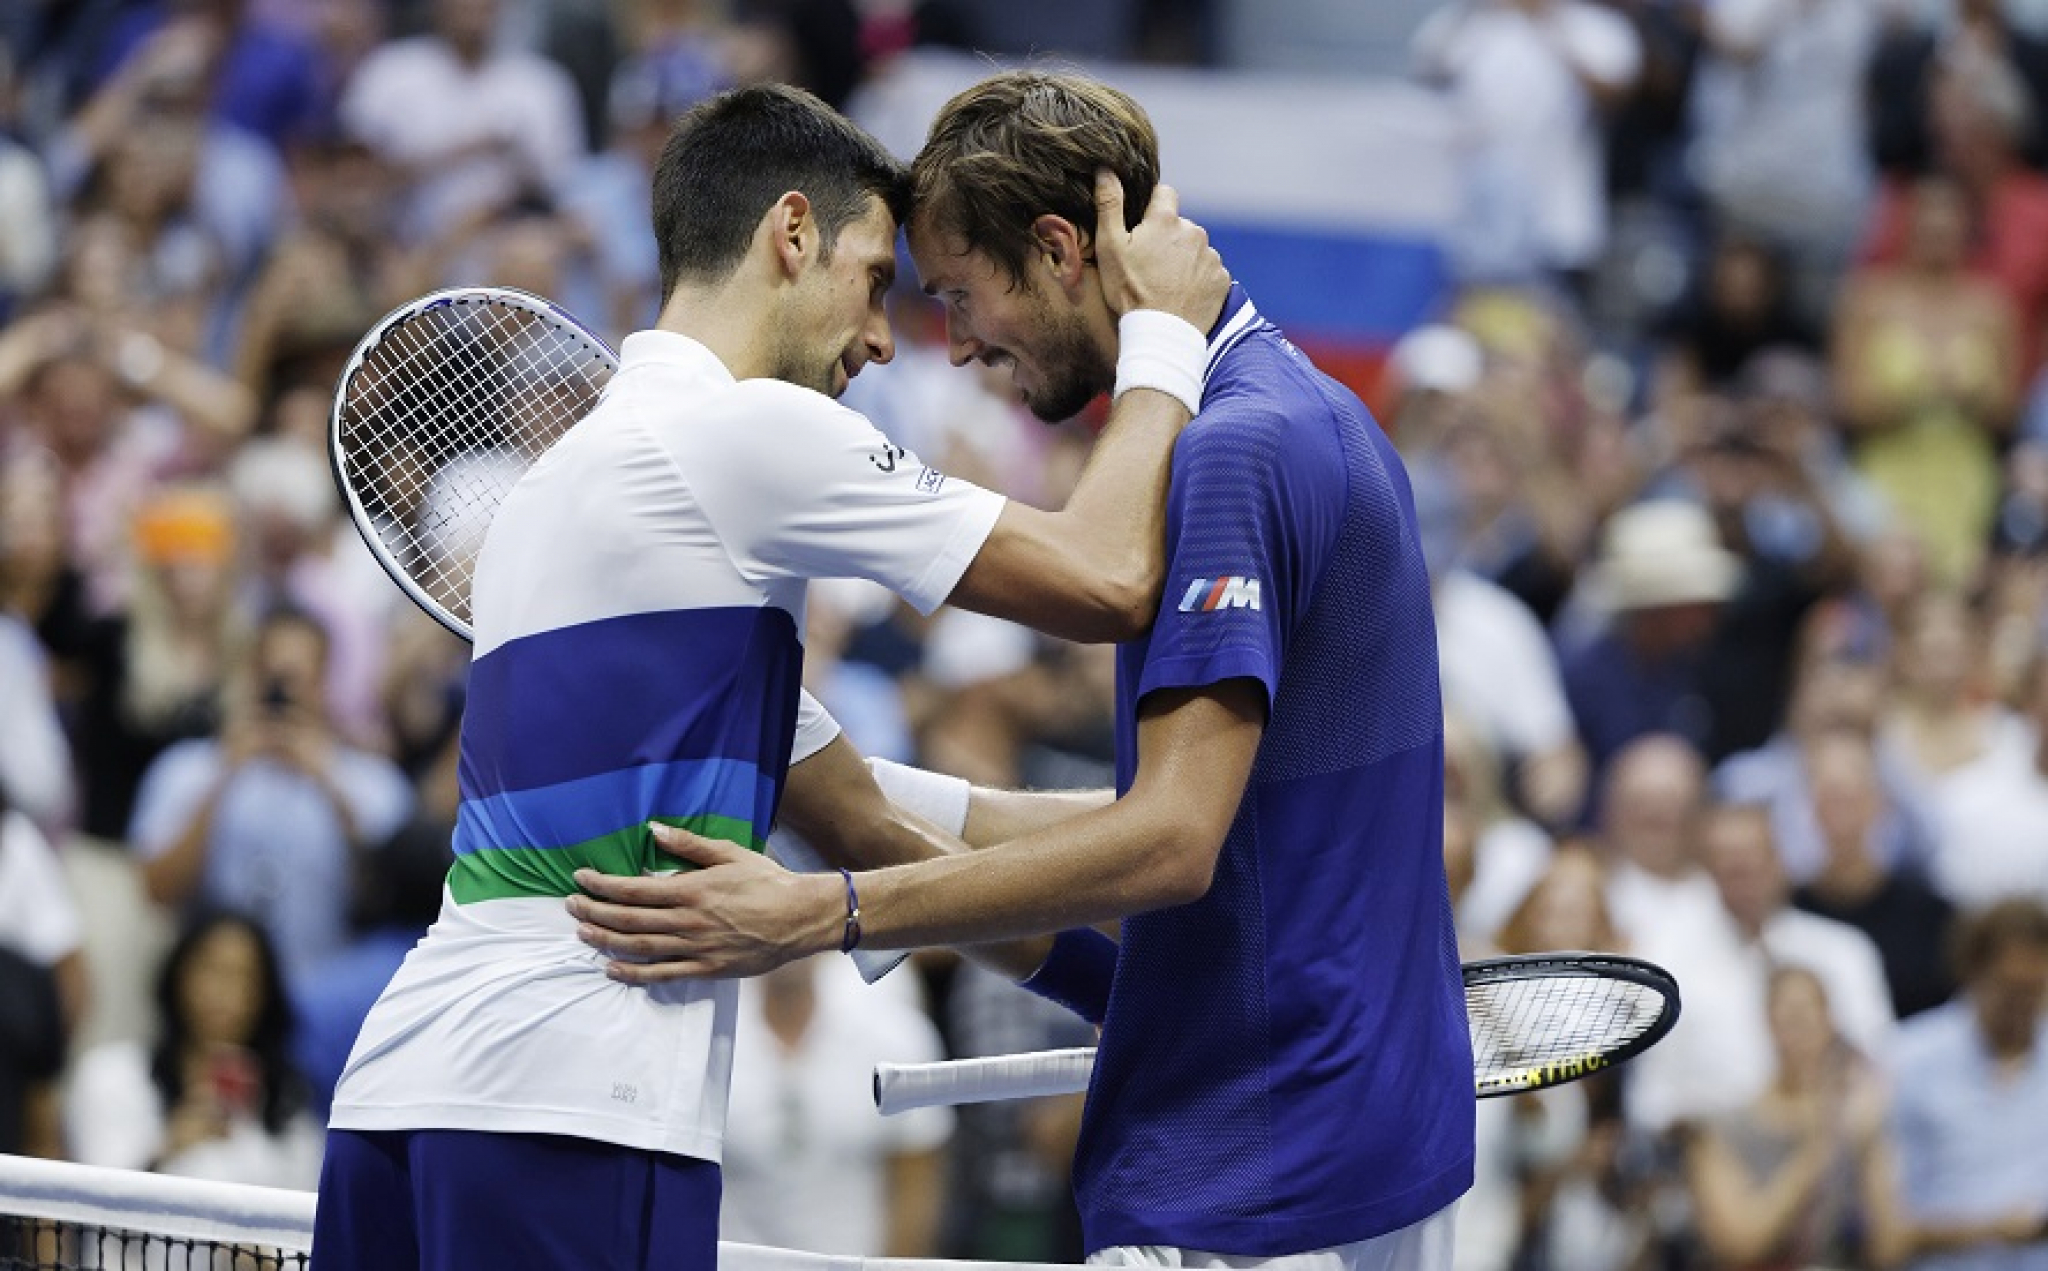 RUS OTPISAO ĐOKOVIĆA! Ovaj teniser je Novaku srušio jedan san, a sada želi da mu zada novi udarac!